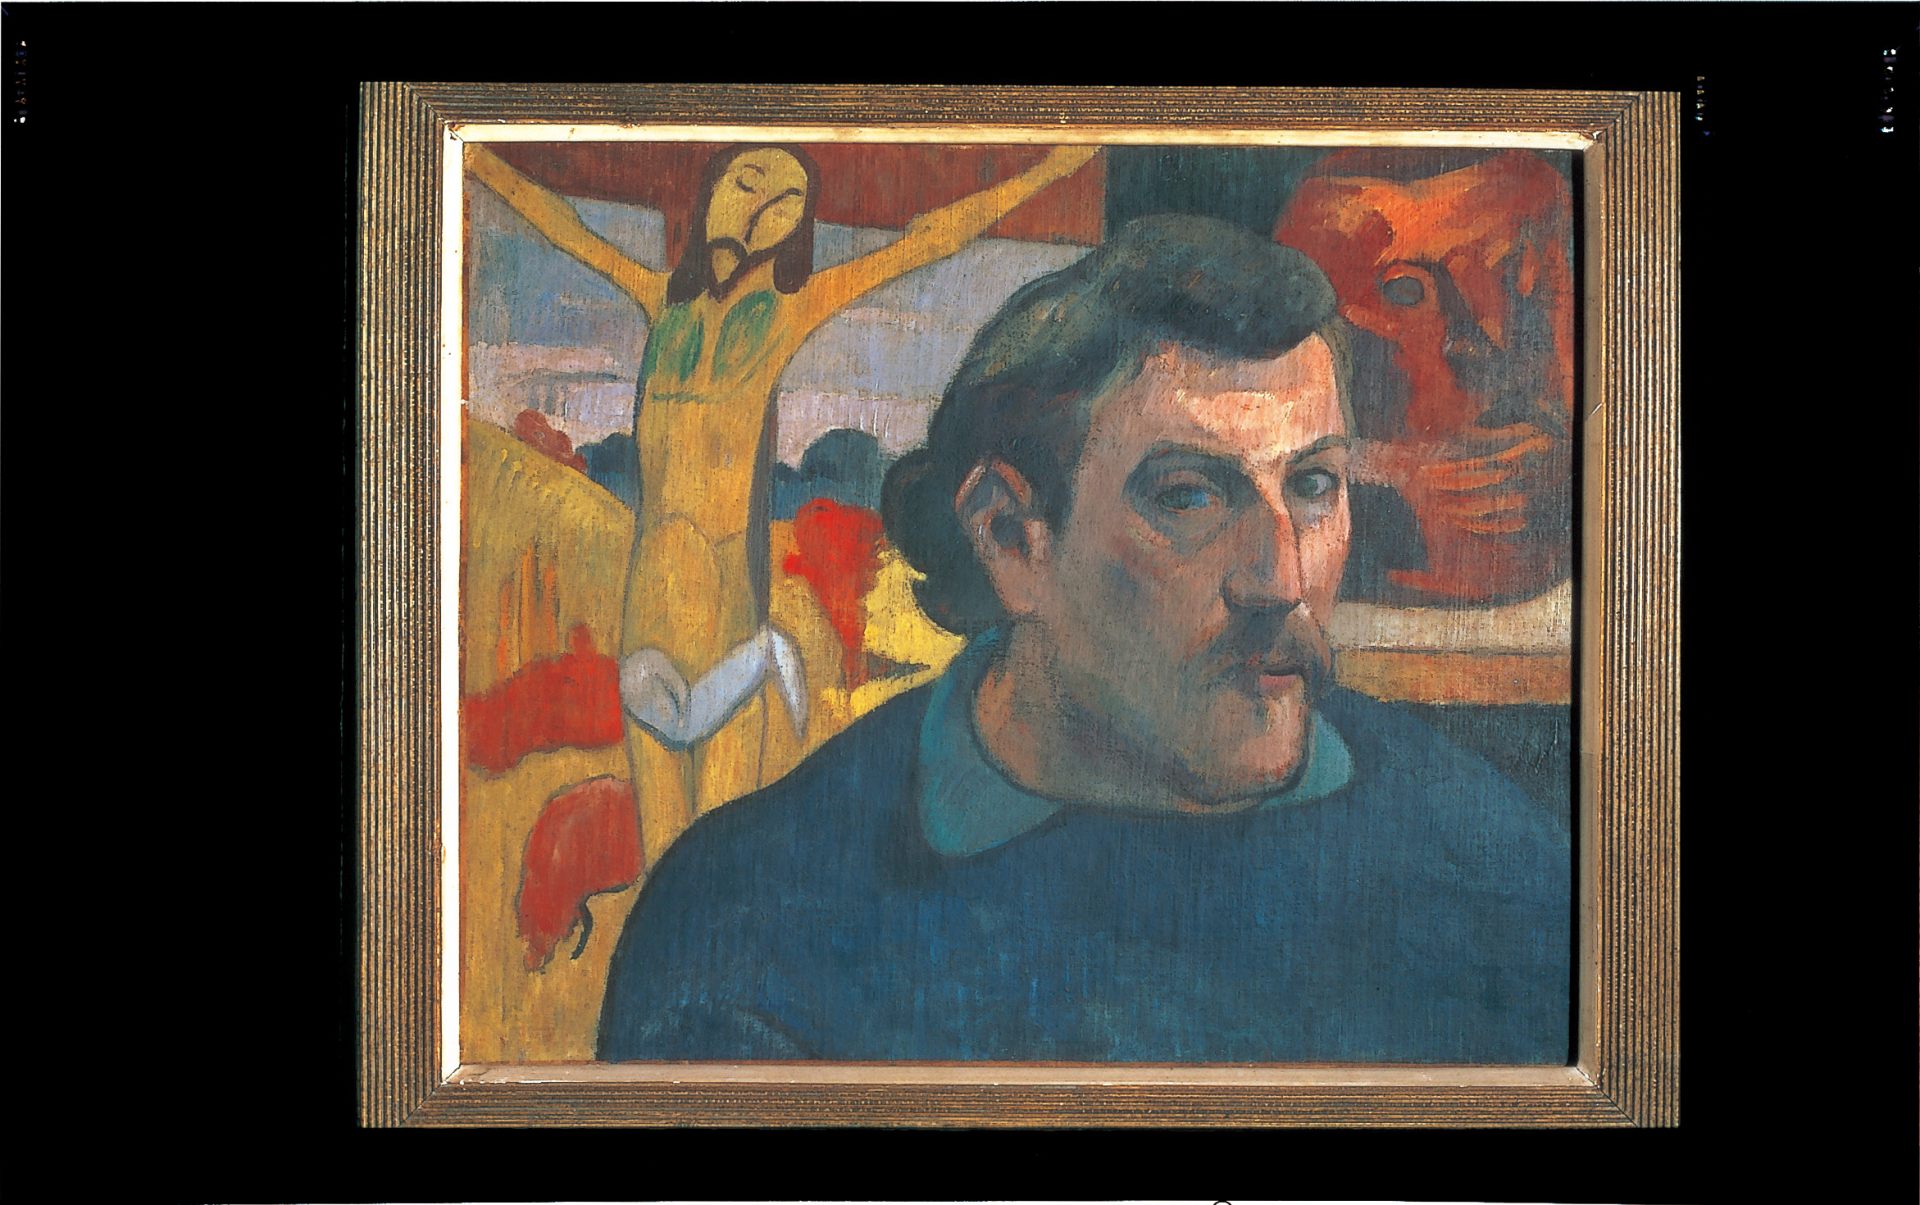 ゴーギャン『黄色いキリストのある自画像 Portrait de l'artiste au Christ jaune』
Ⓒ The Bridgeman Art Library